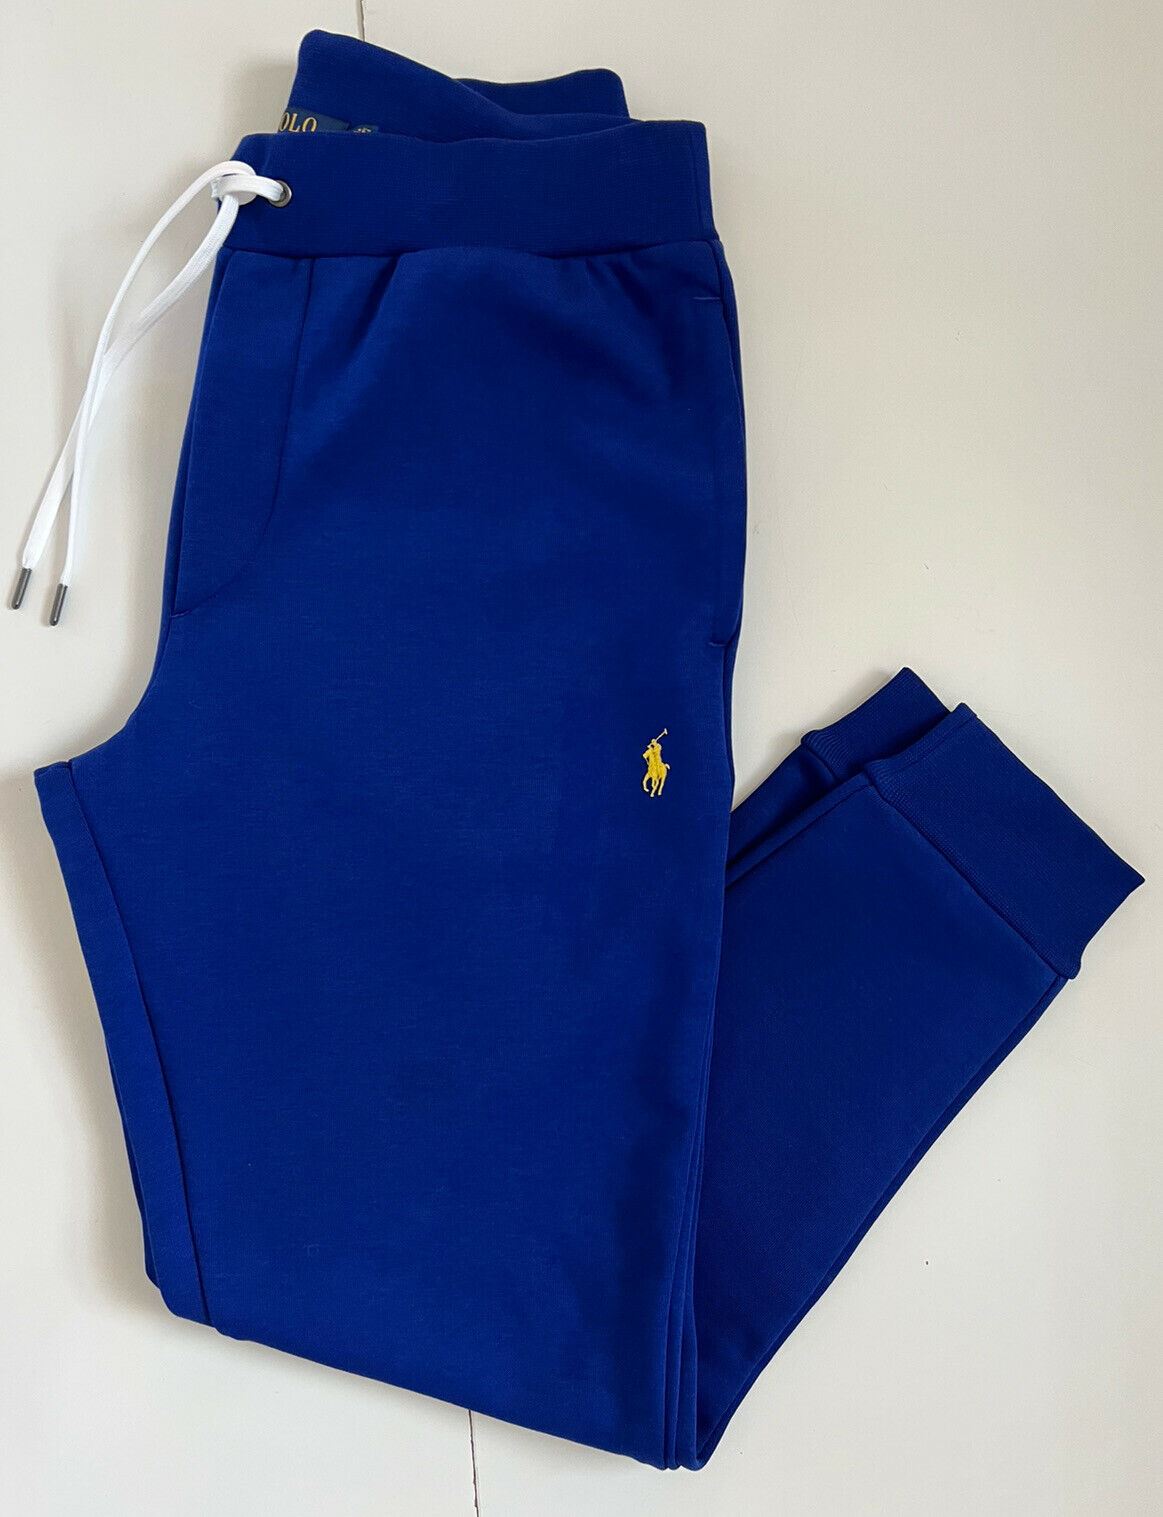 Мужские большие синие повседневные брюки с логотипом Polo Ralph Lauren, размер NWT 125 долларов США, маленькие